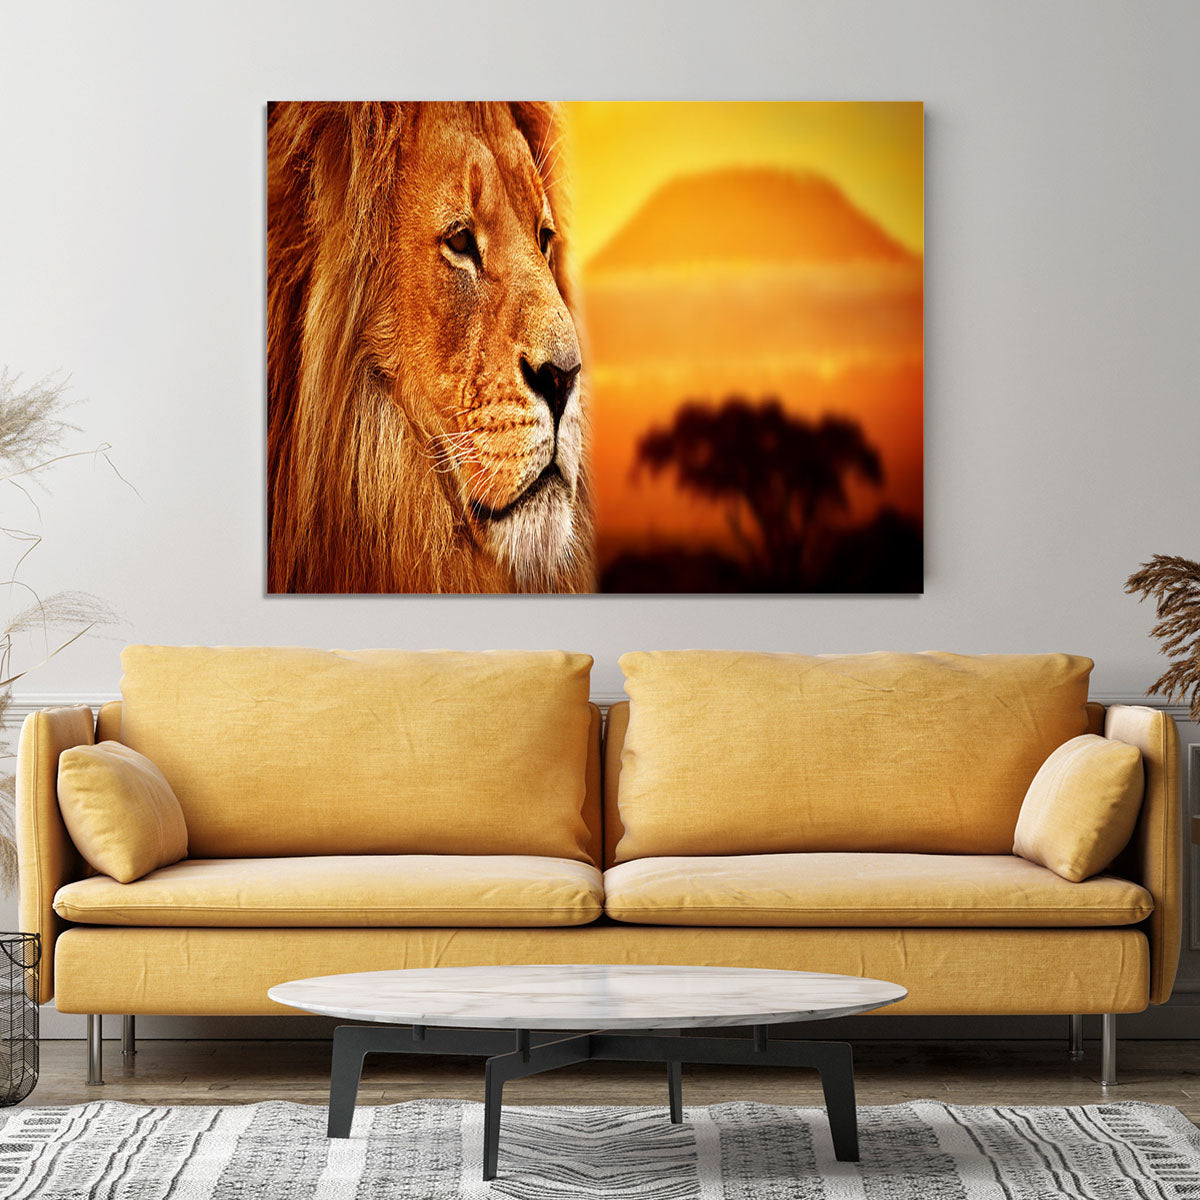 Lion portrait on savanna landscape Canvas Print or Poster - Canvas Art Rocks - 4